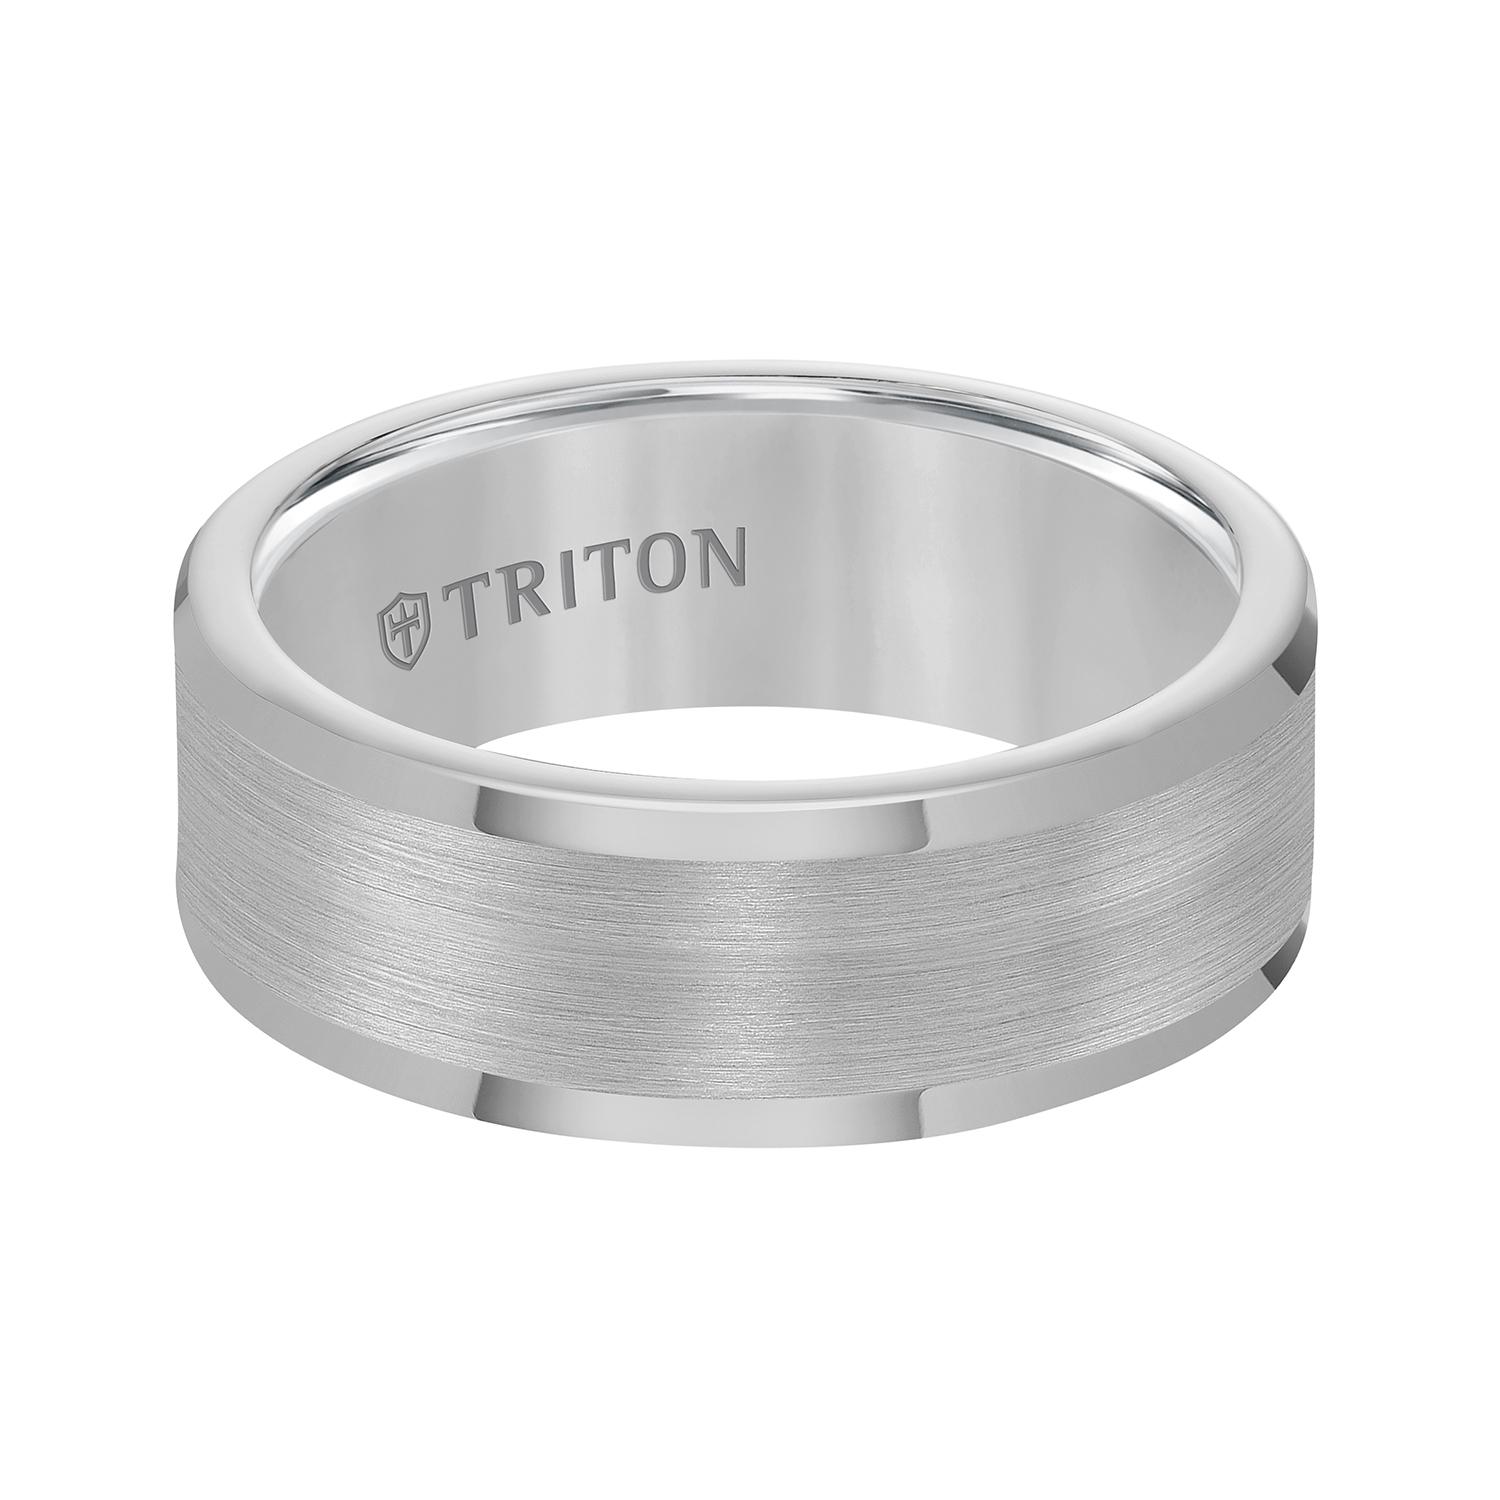 Triton Tungsten Band